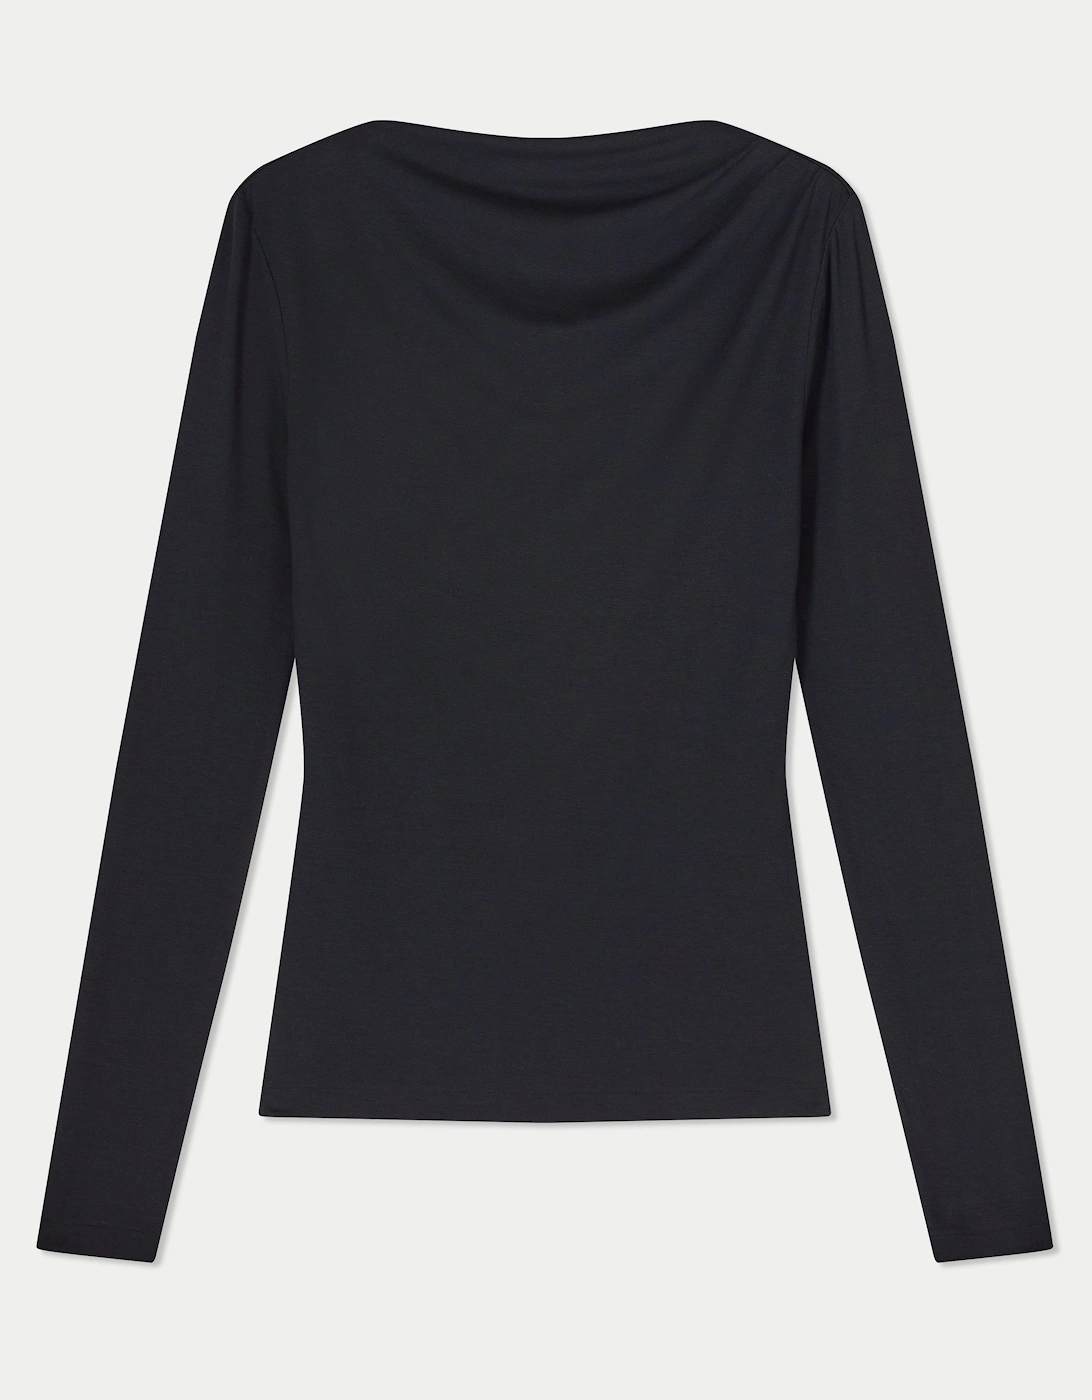 Pleat Long Sleeve Jersey Top | Black